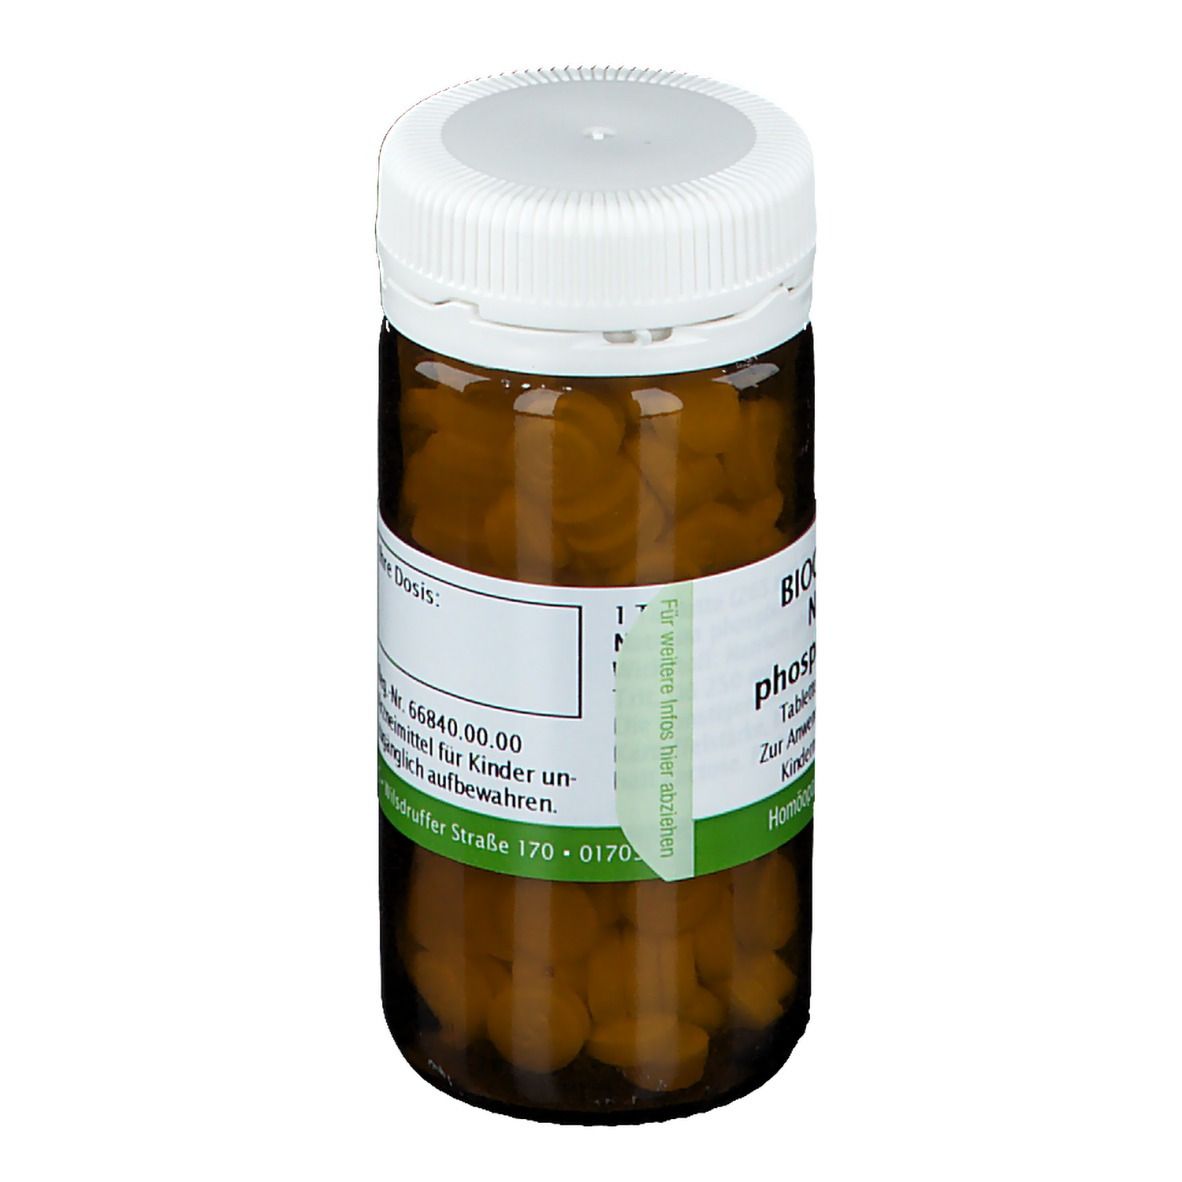 Bombastus Biochemie 9 Natrium phosphoricum D 6 Tabletten